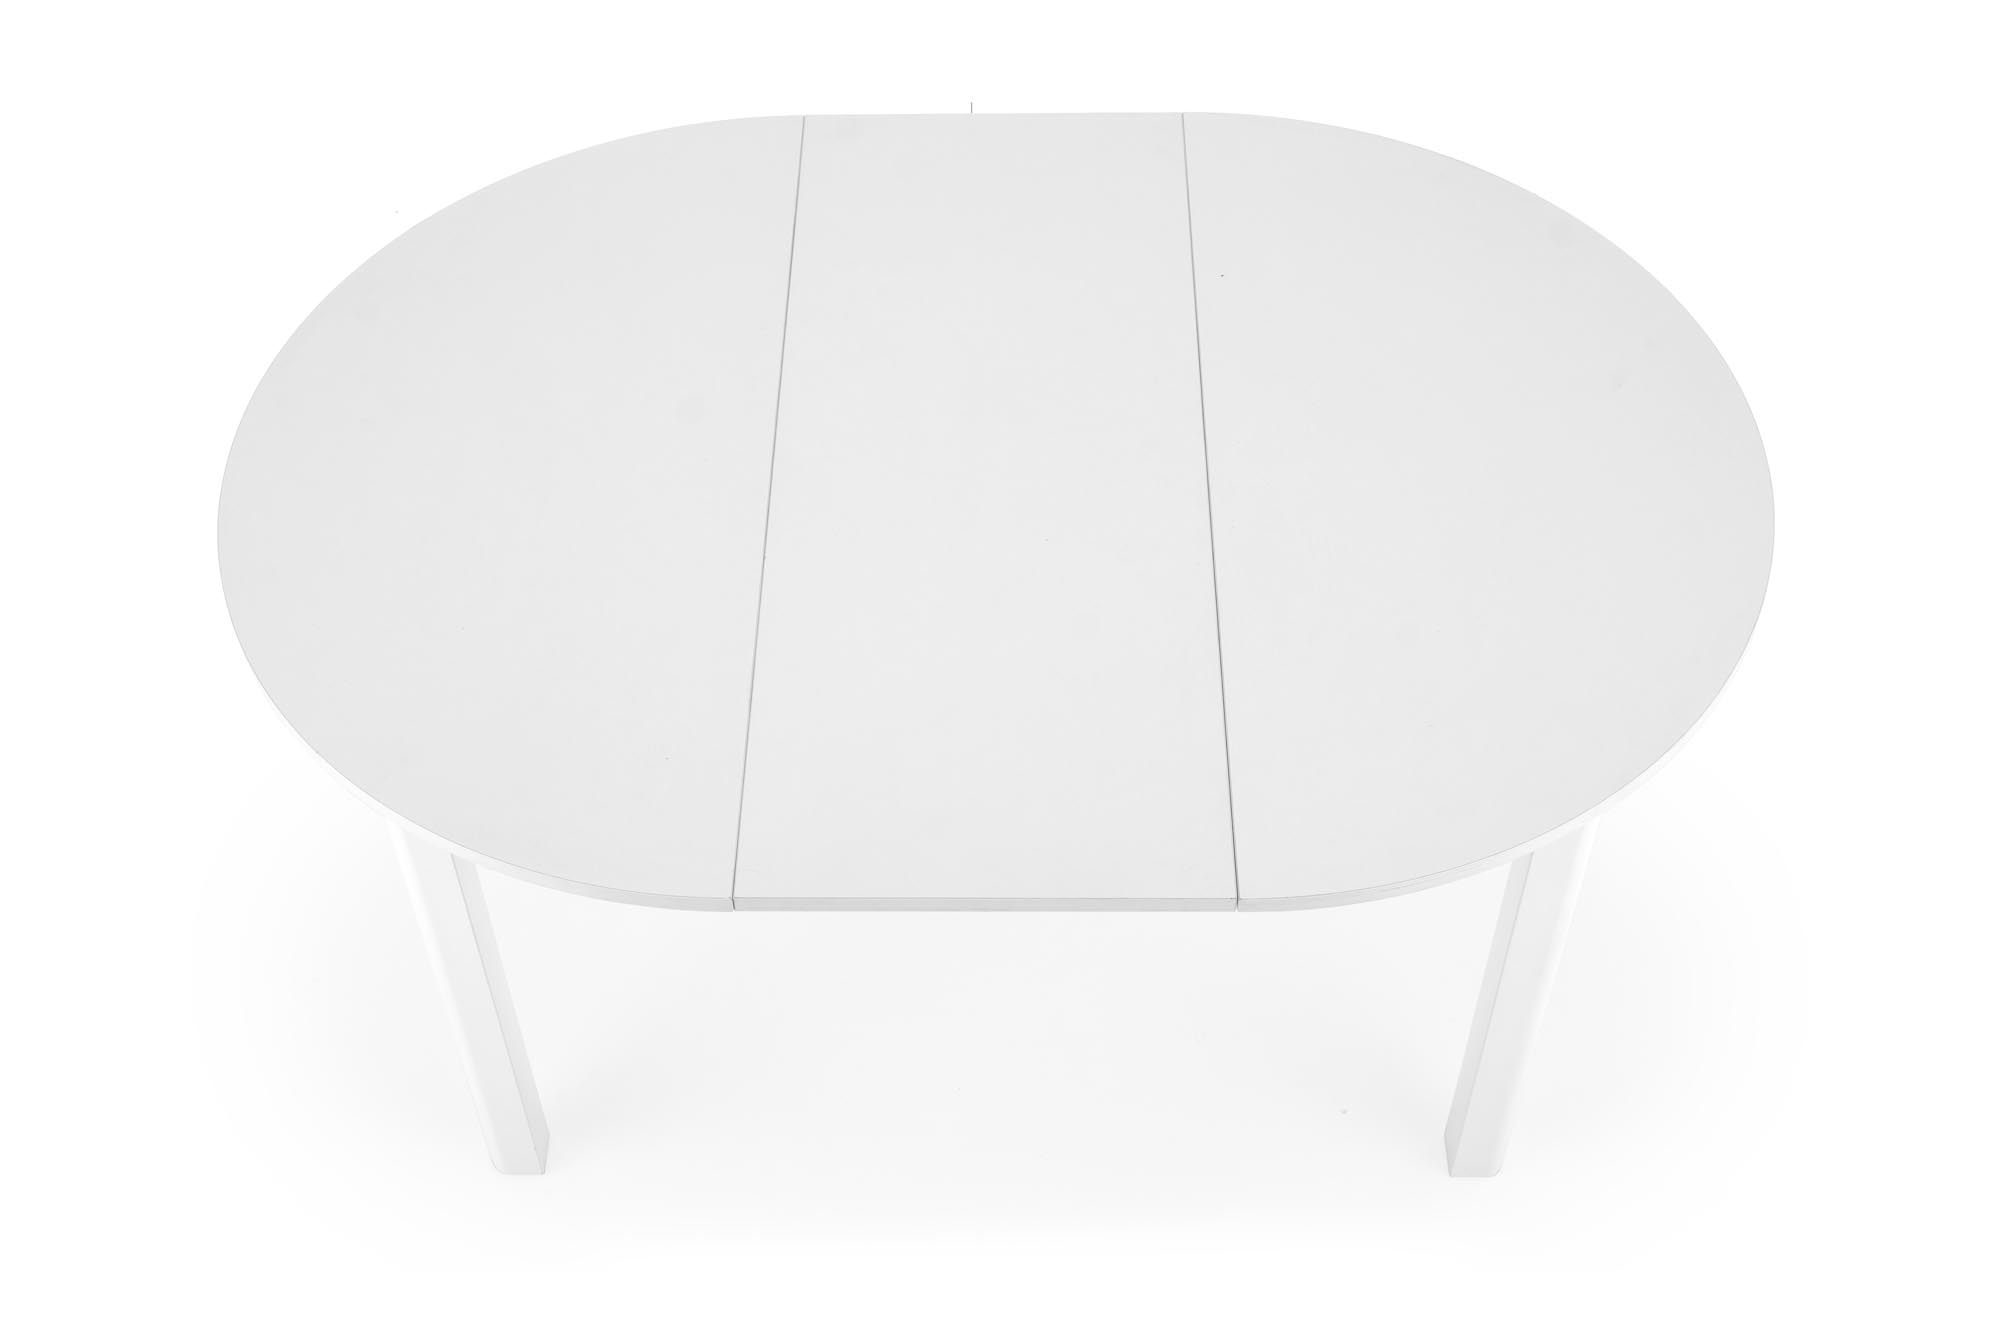 RINGO stôl Farba - Biely ringo Stôl Farba - Biely